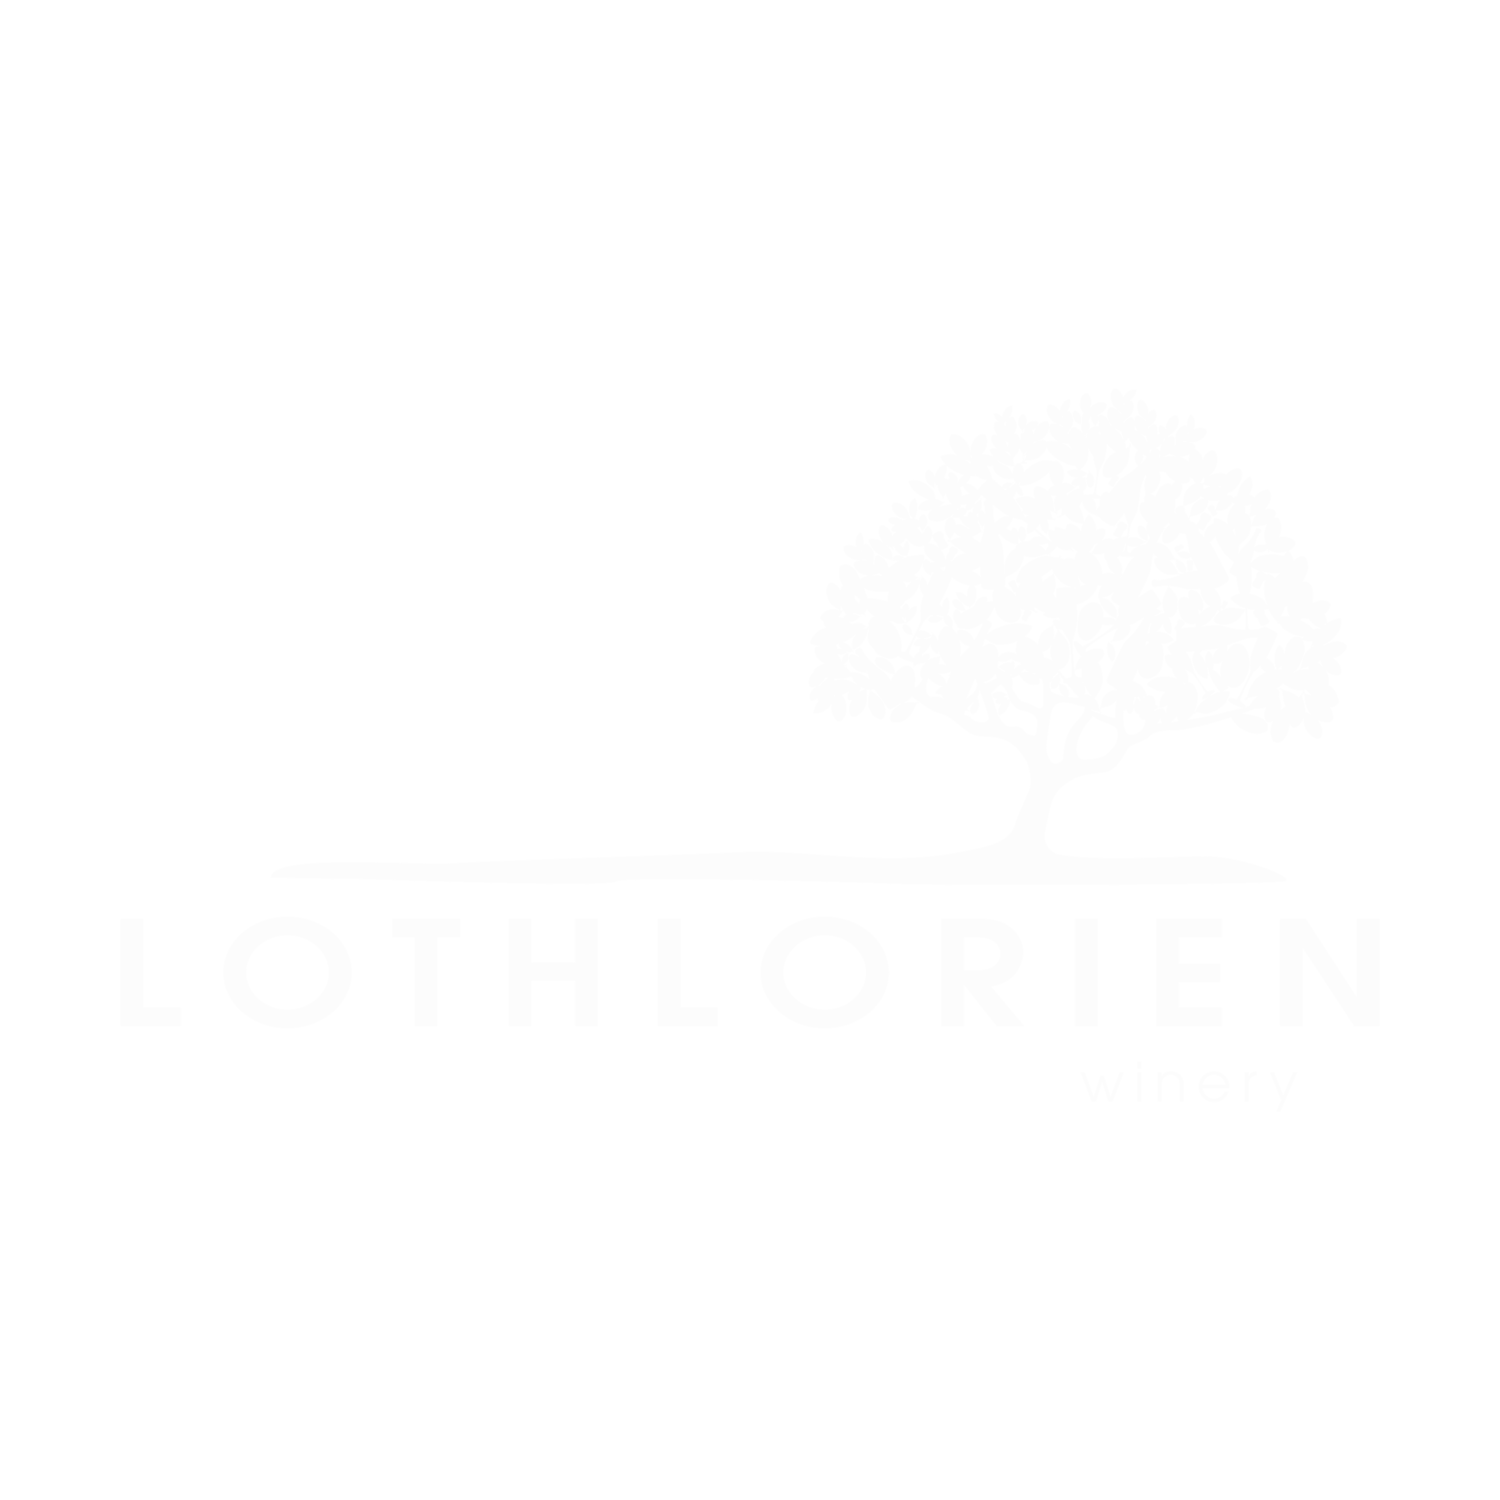 Lothlorien Winery Ltd